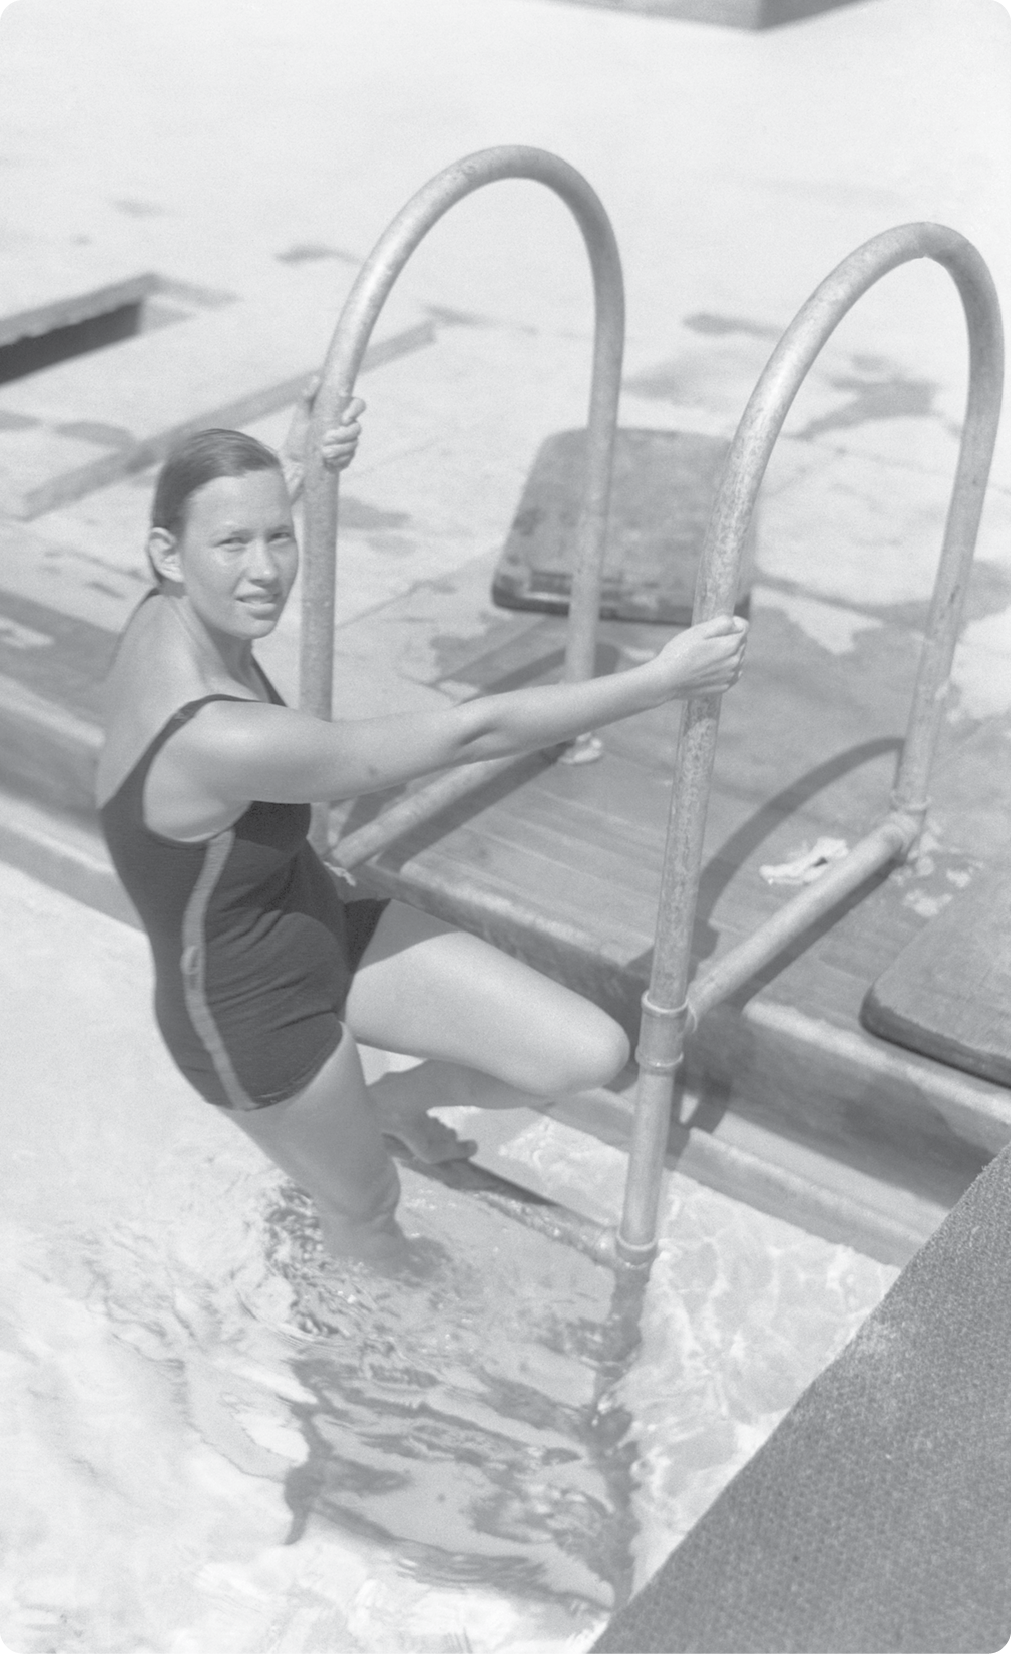 Fotografia em preto e branco. Maria Lenk, mulher com cabelos presos, usando maiô. Ela está segurando uma escada na beira da piscina.